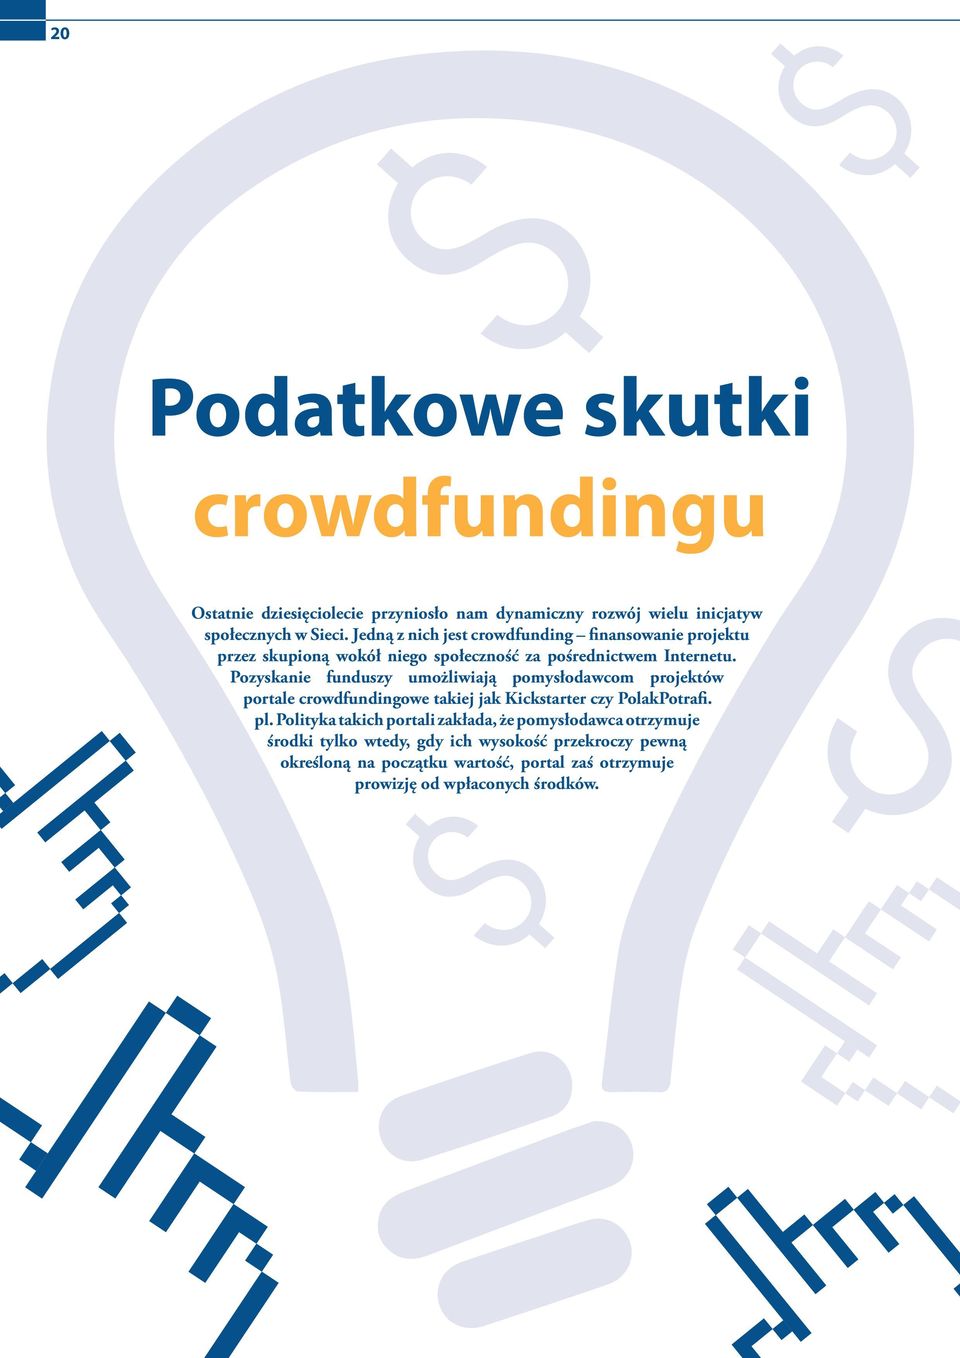 Pozyskanie funduszy umożliwiają pomysłodawcom projektów portale crowdfundingowe takiej jak Kickstarter czy PolakPotrafi. pl.